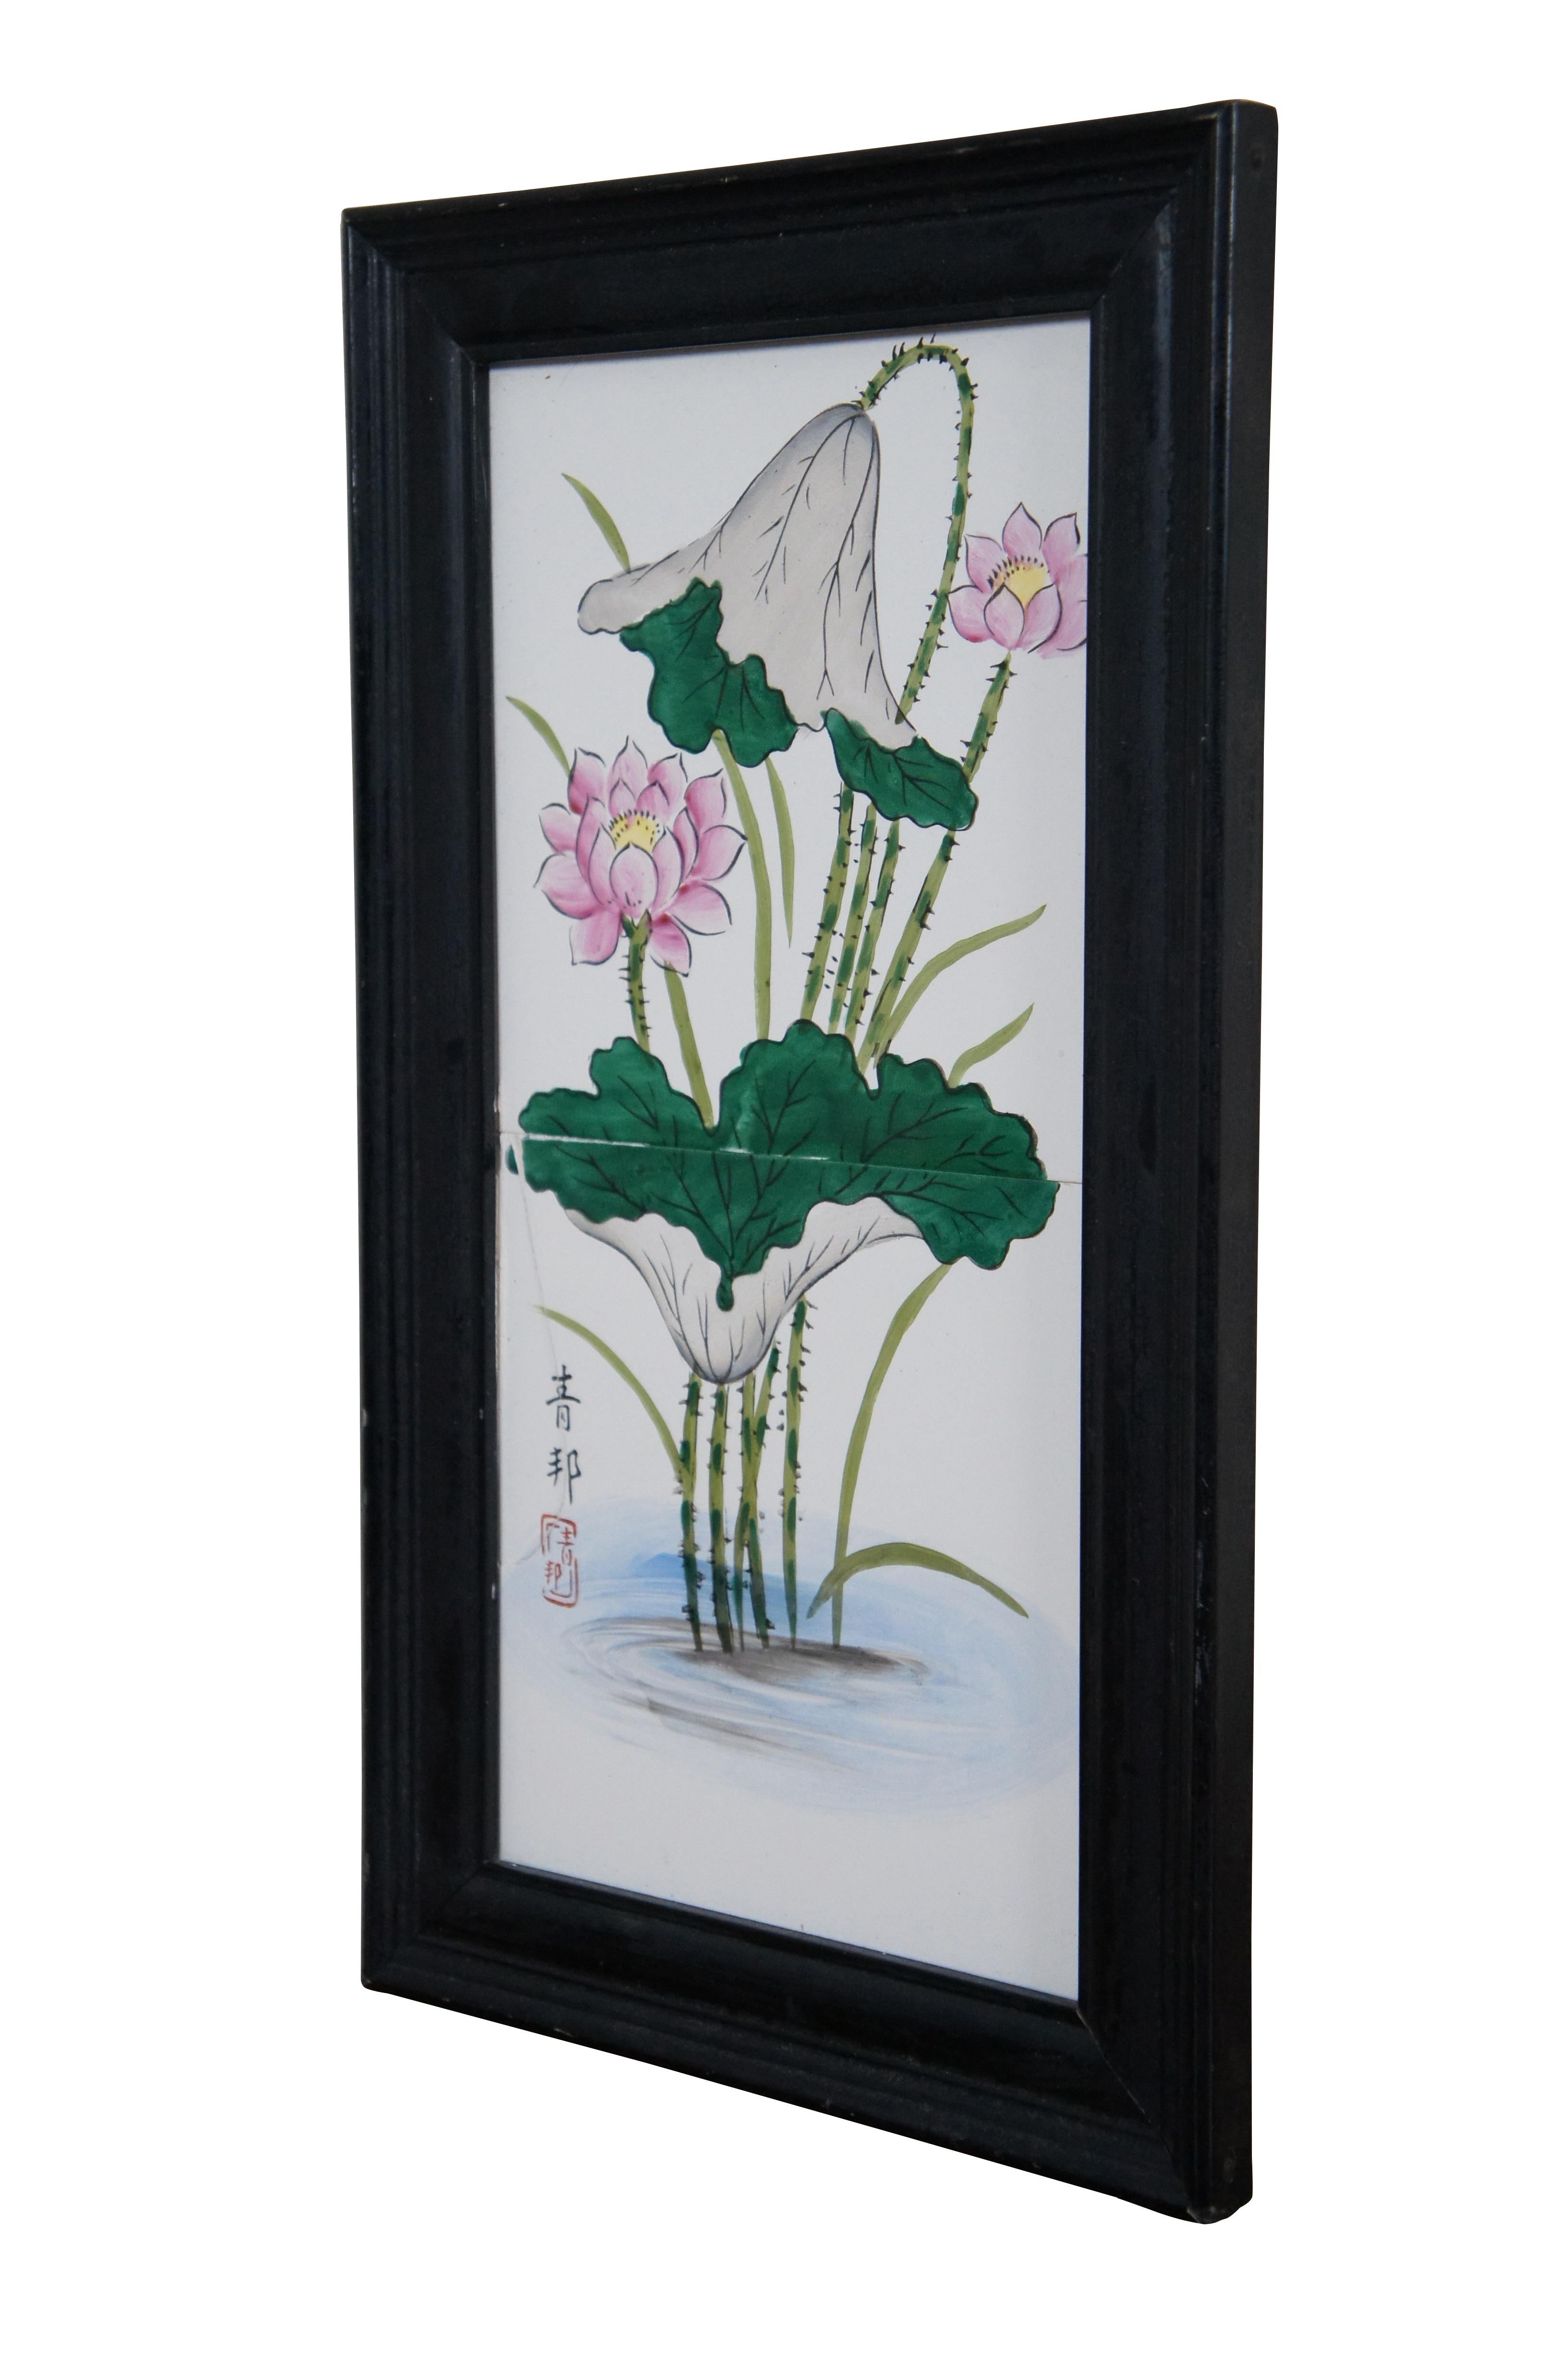 Vintage tuiles chinoises en porcelaine blanche peintes à la main avec des nénuphars roses / nénuphars / fleurs de lotus. Signé à gauche. Cadre en bois biseauté noir.

Dimensions :
8